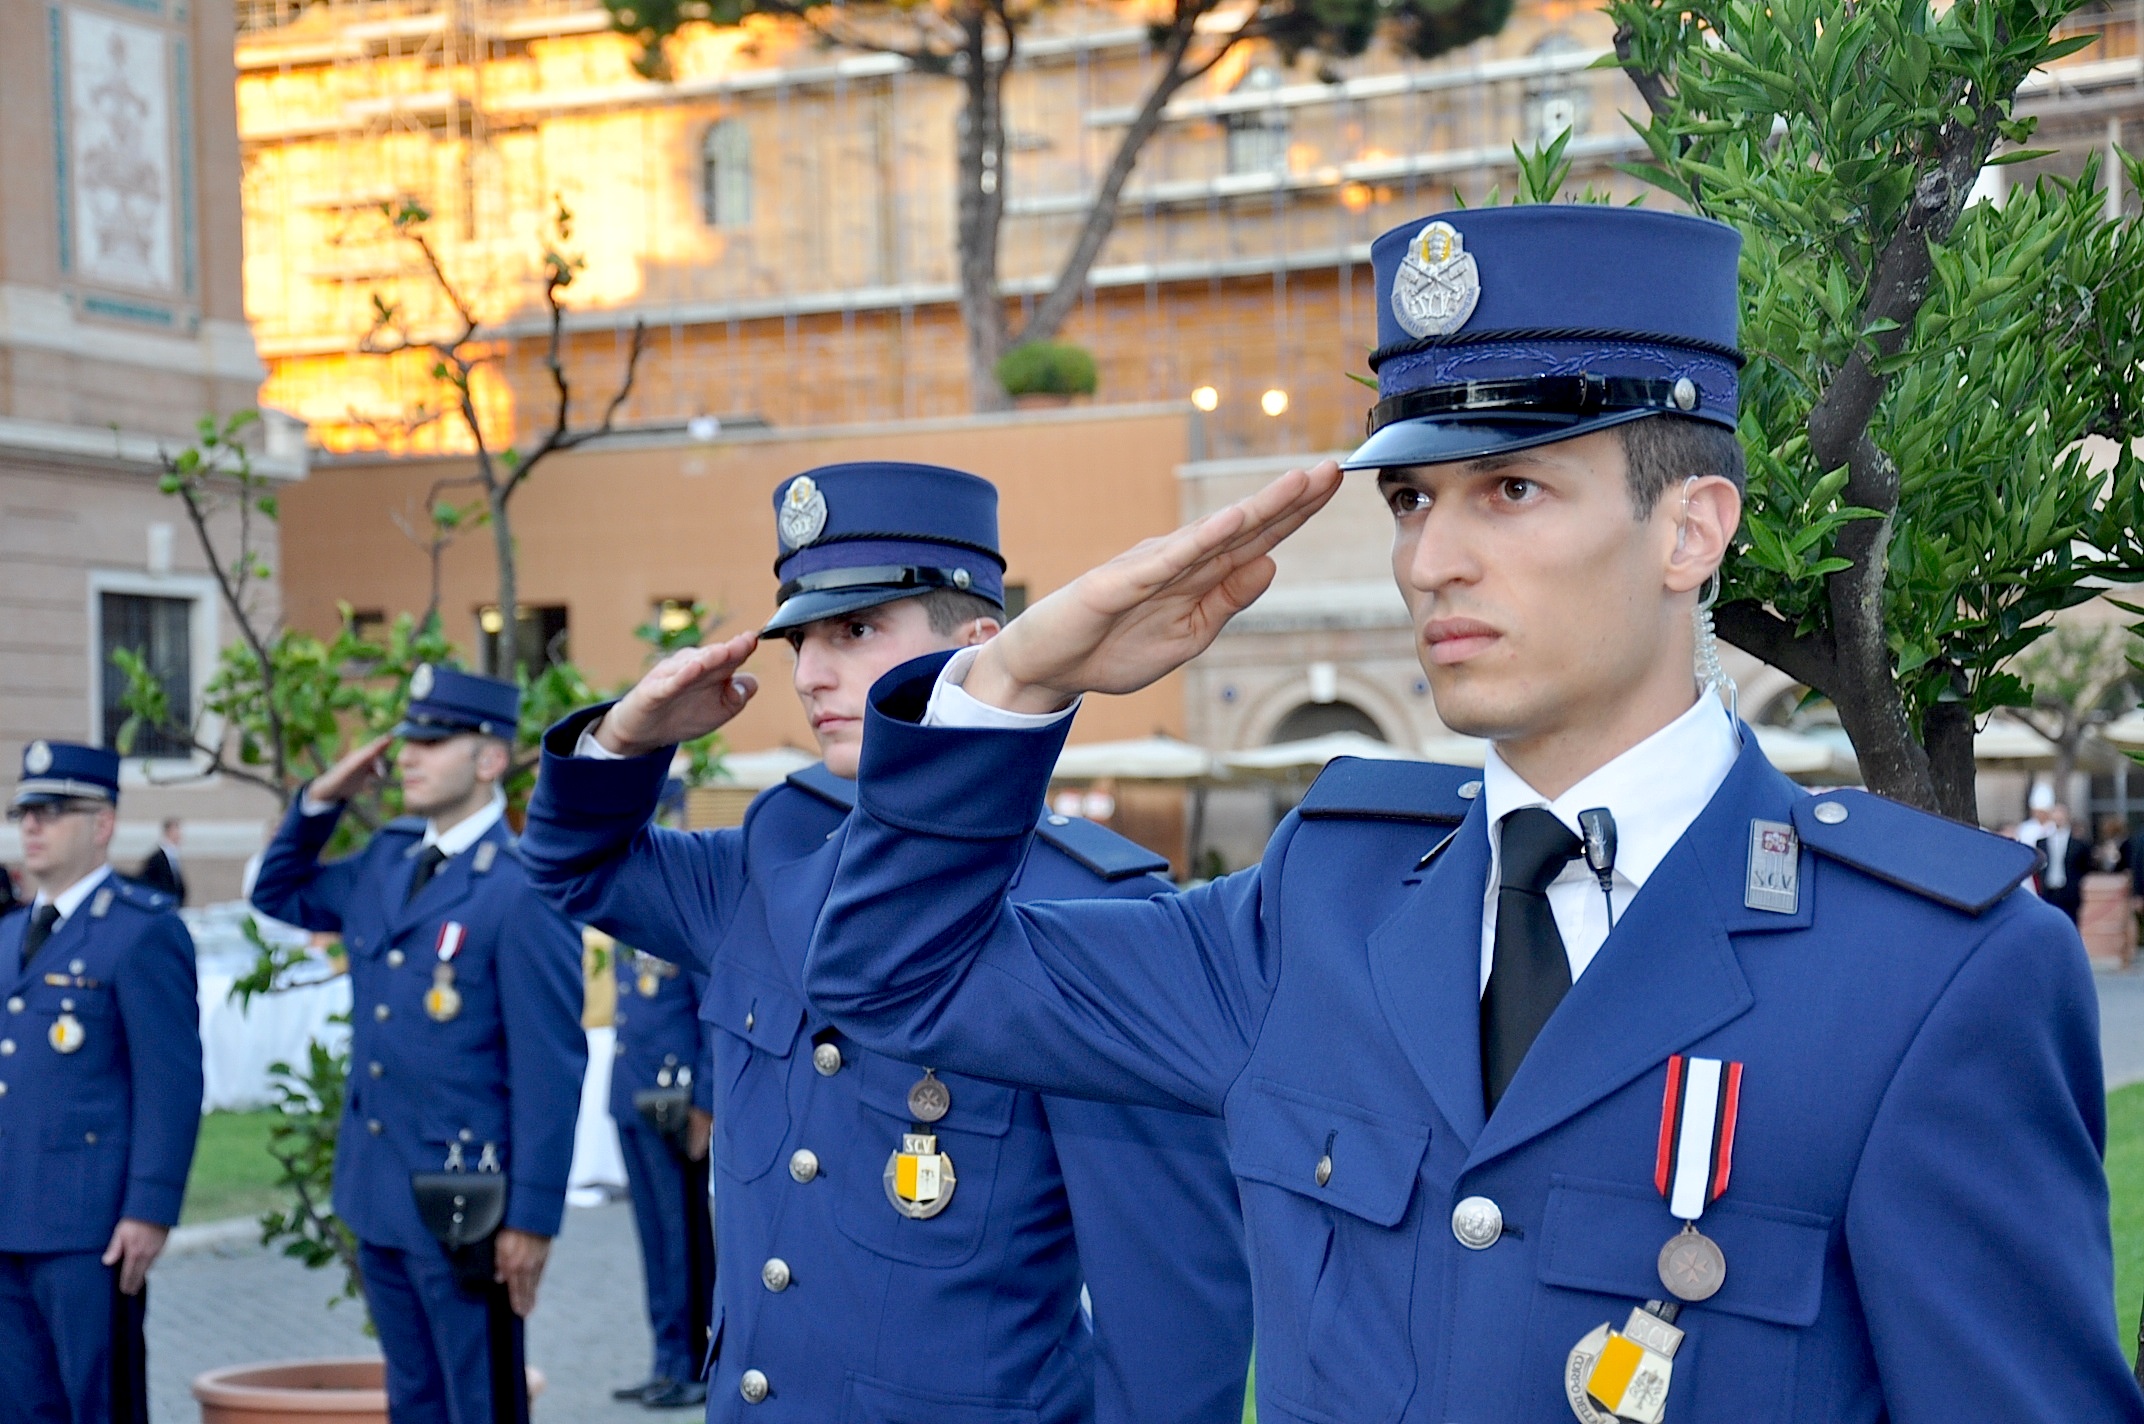 Vatican Gendarmery